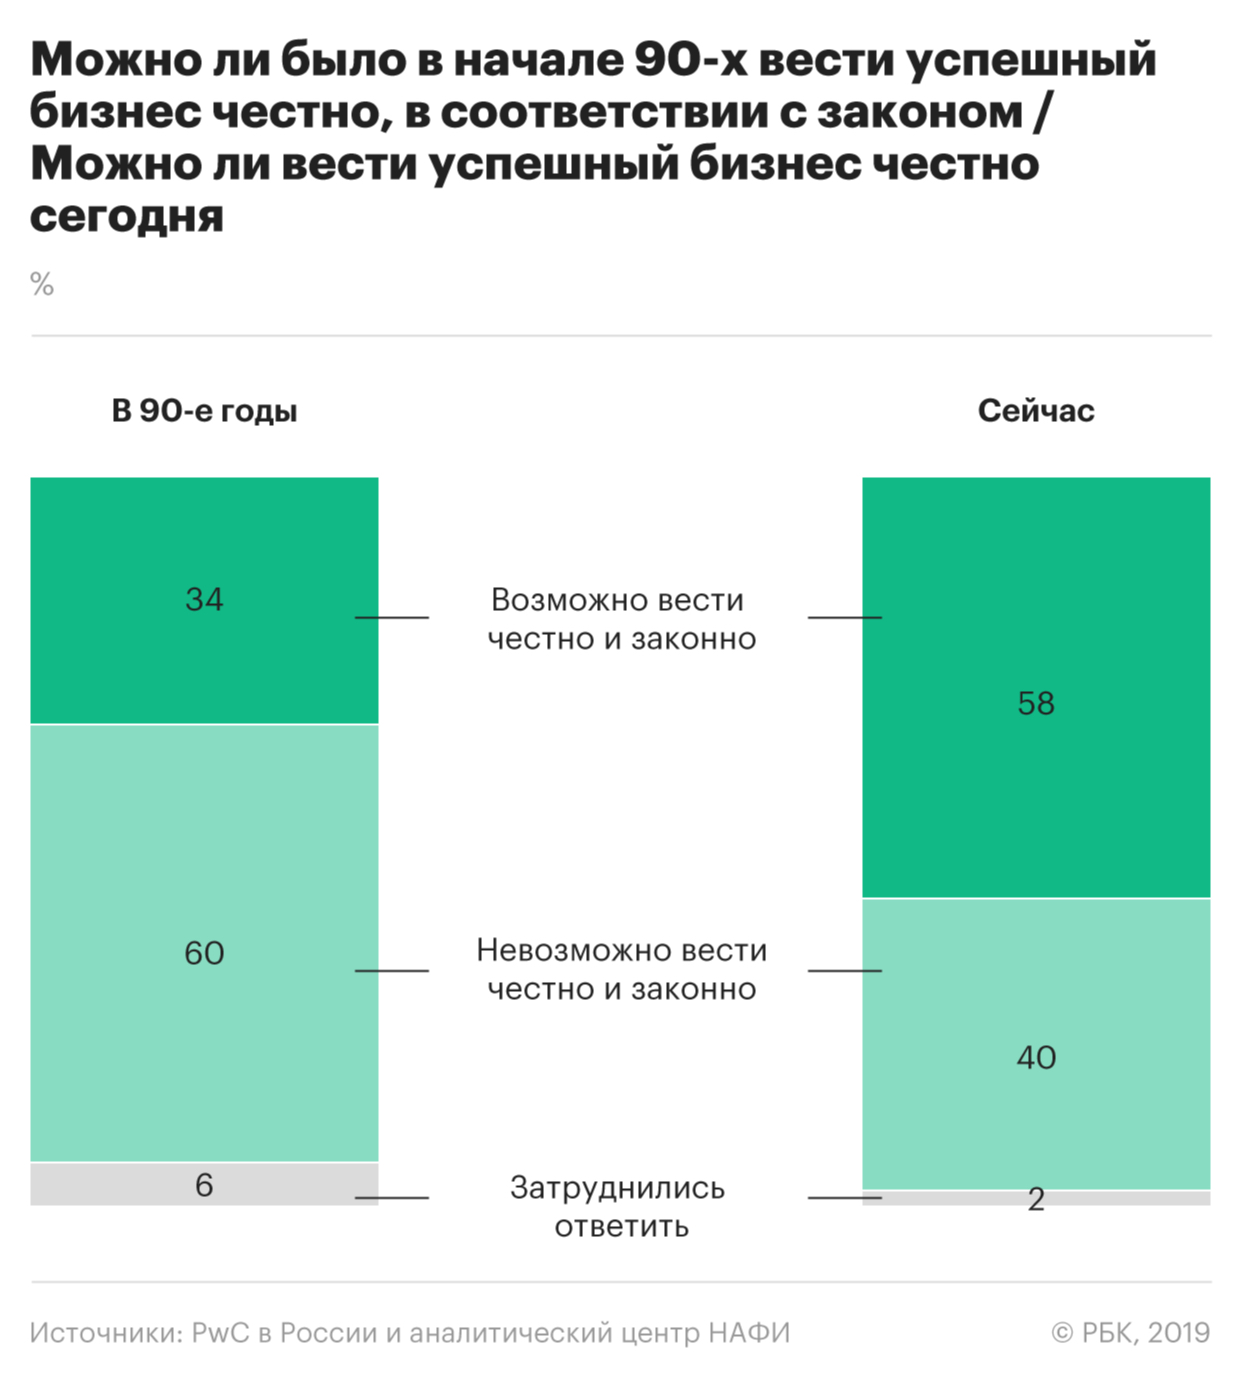 Российский бизнес заявил об ухудшении условий по сравнению с 1990-ми